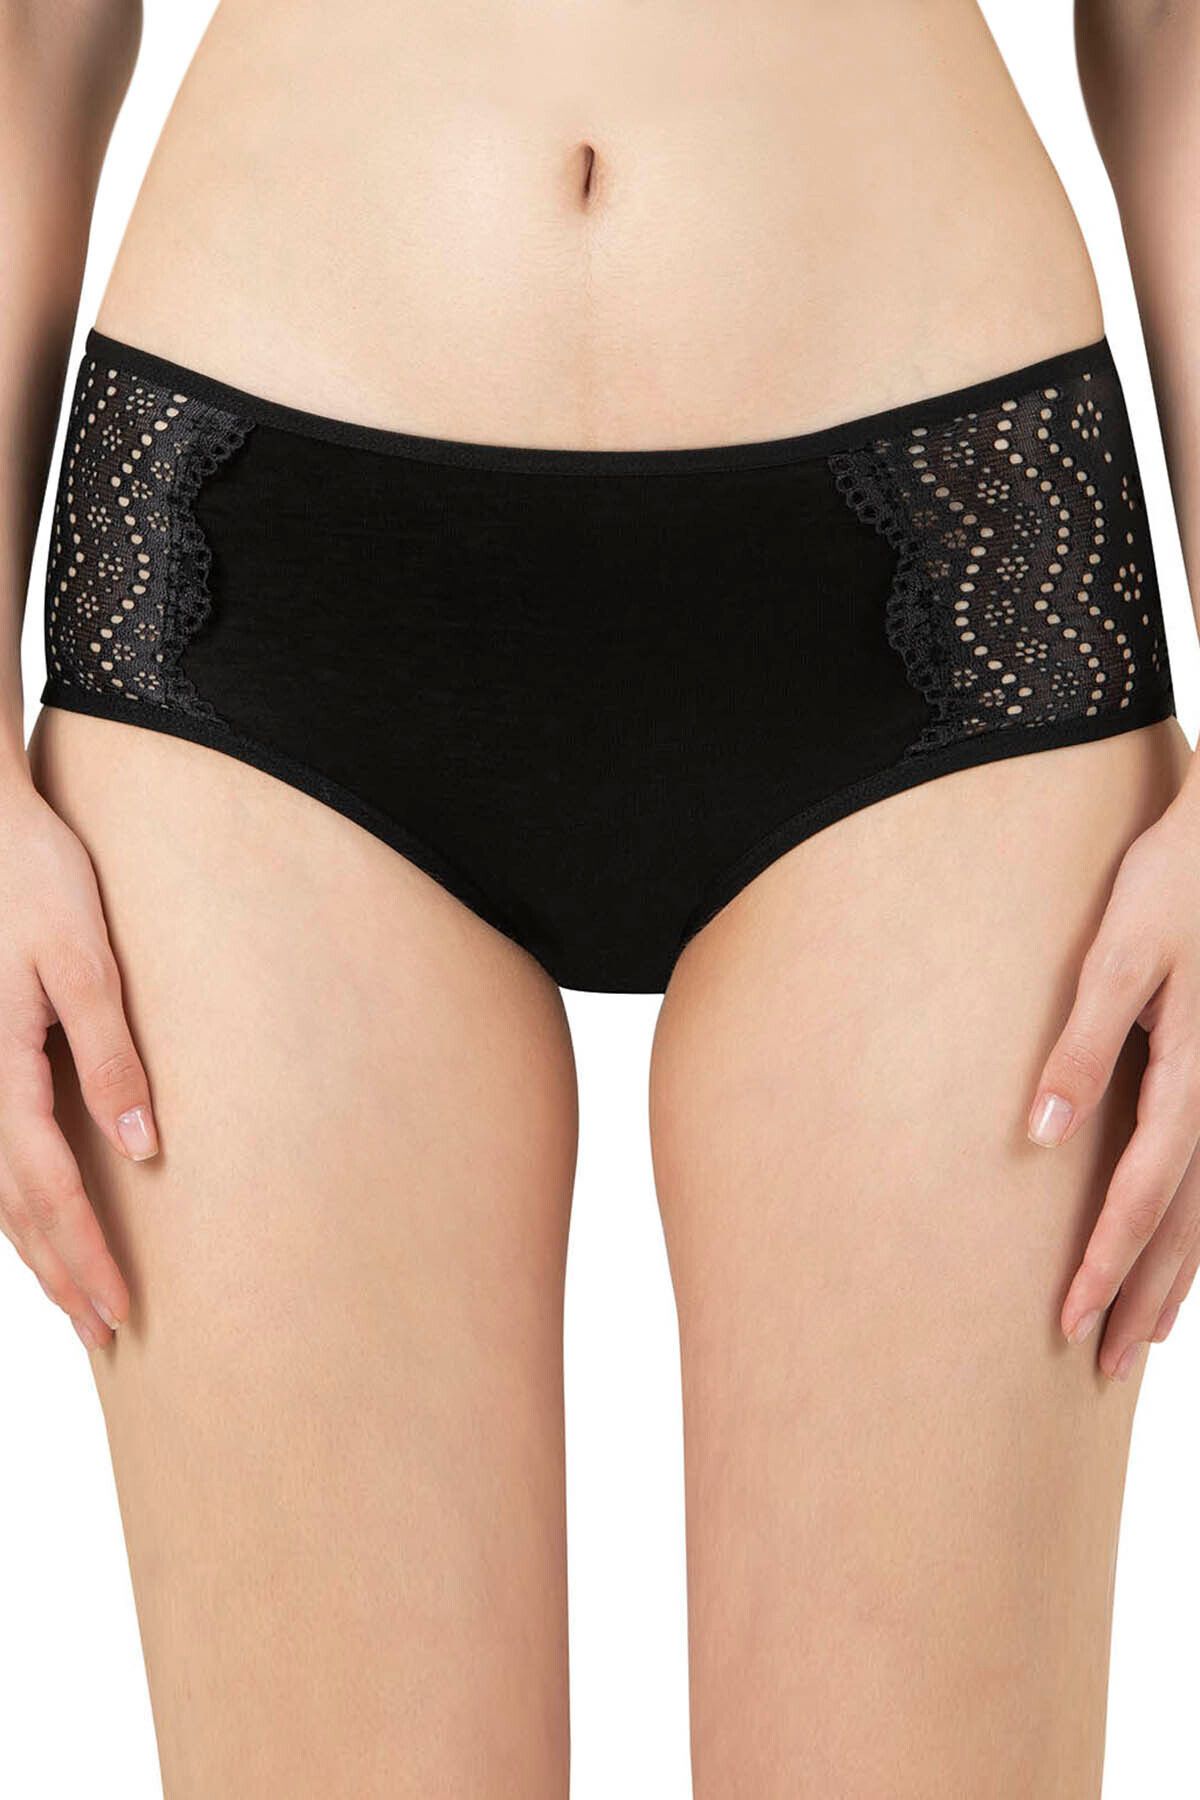 ÖZKAN underwear Özkan 26962 Kadın Modal Yüksek Bel Esnek Rahat Yumuşak Dantel Detaylı Bato Külot